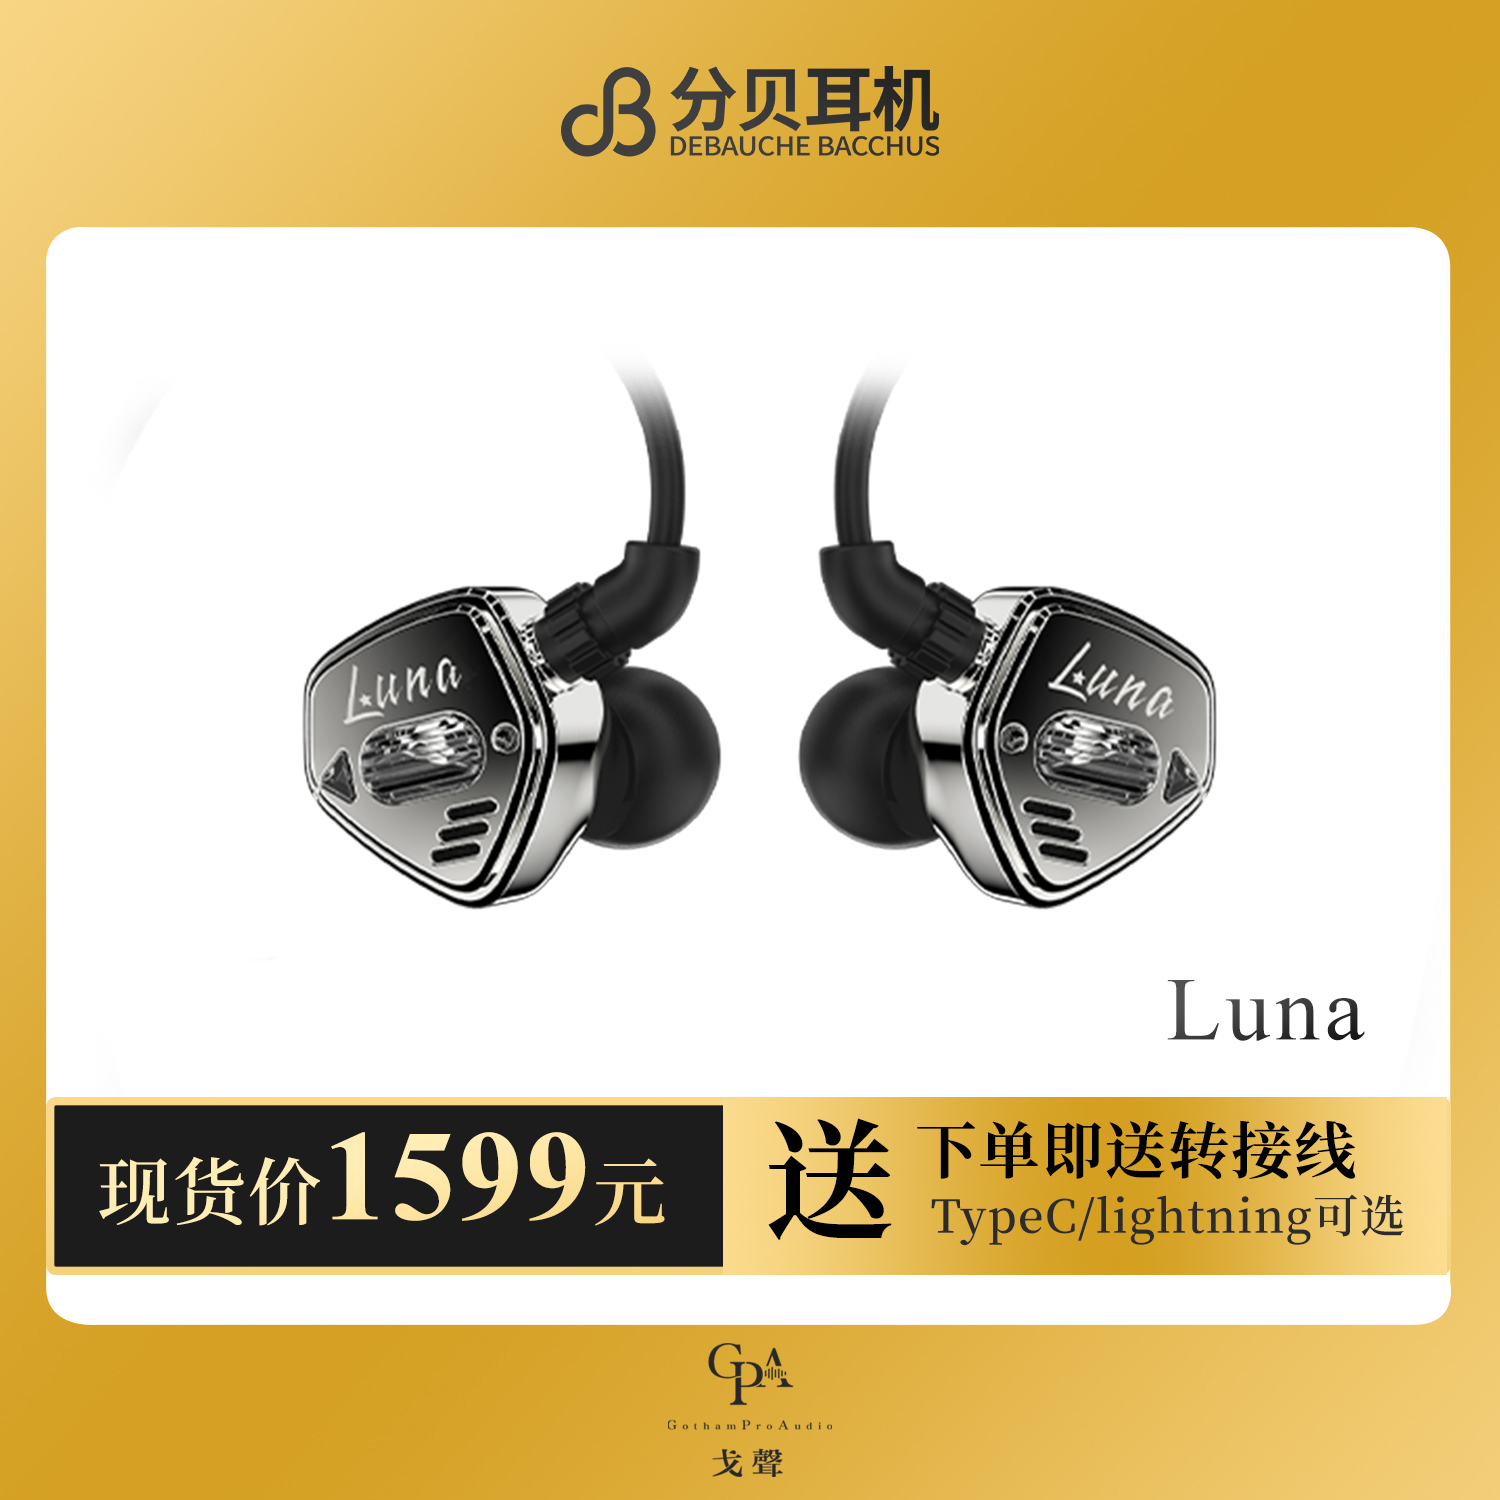 【戈聲】dB/分贝耳机 Luna露娜圈铁混合入耳式HIFI有线耳机